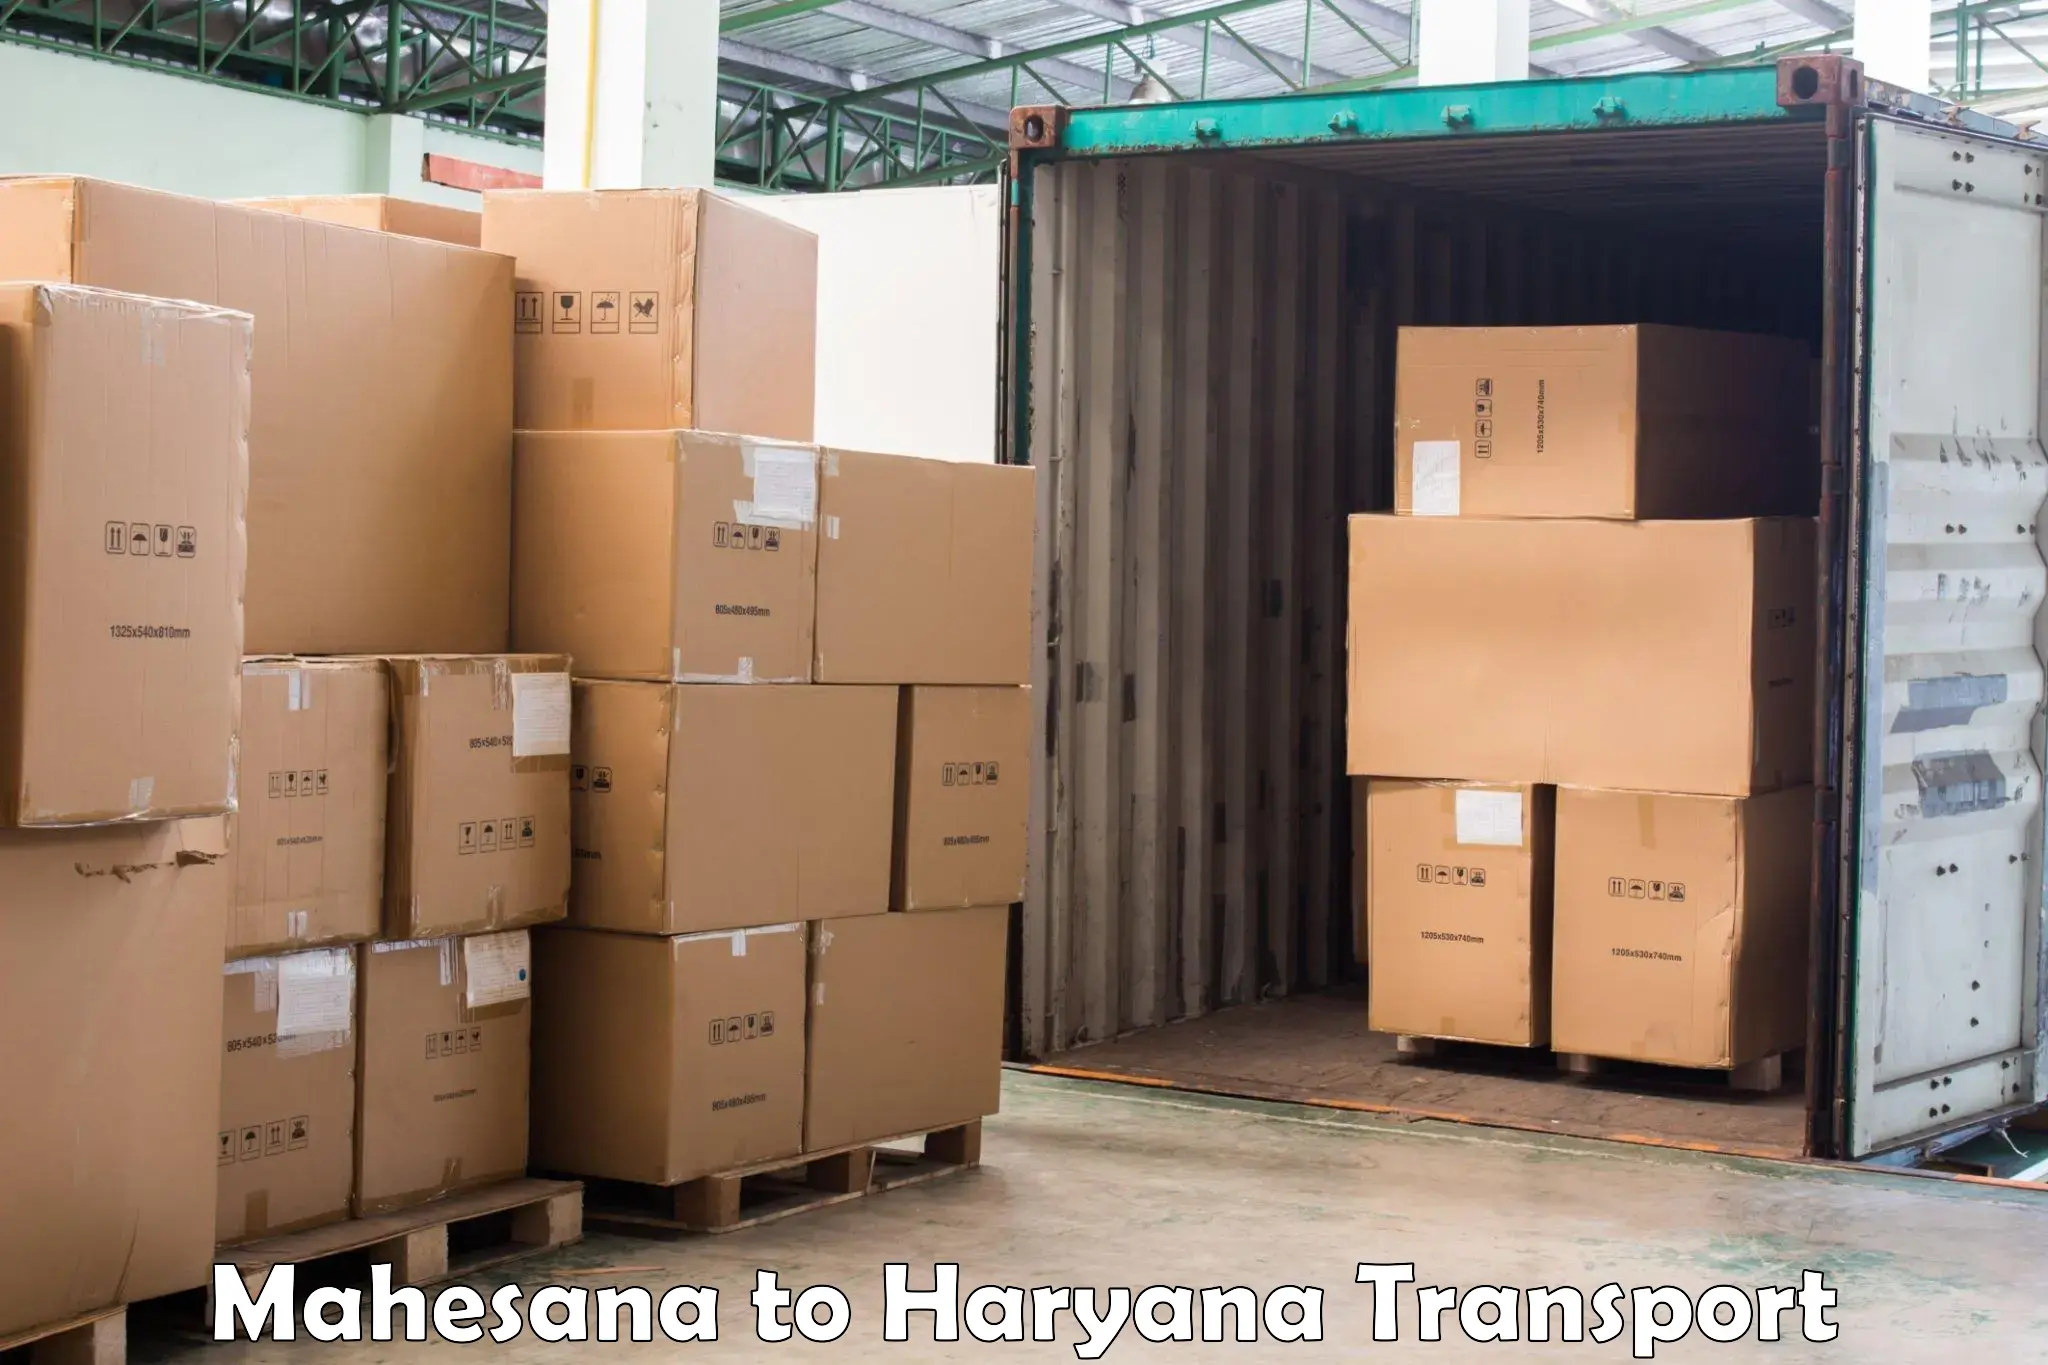 Vehicle transport services Mahesana to Haryana